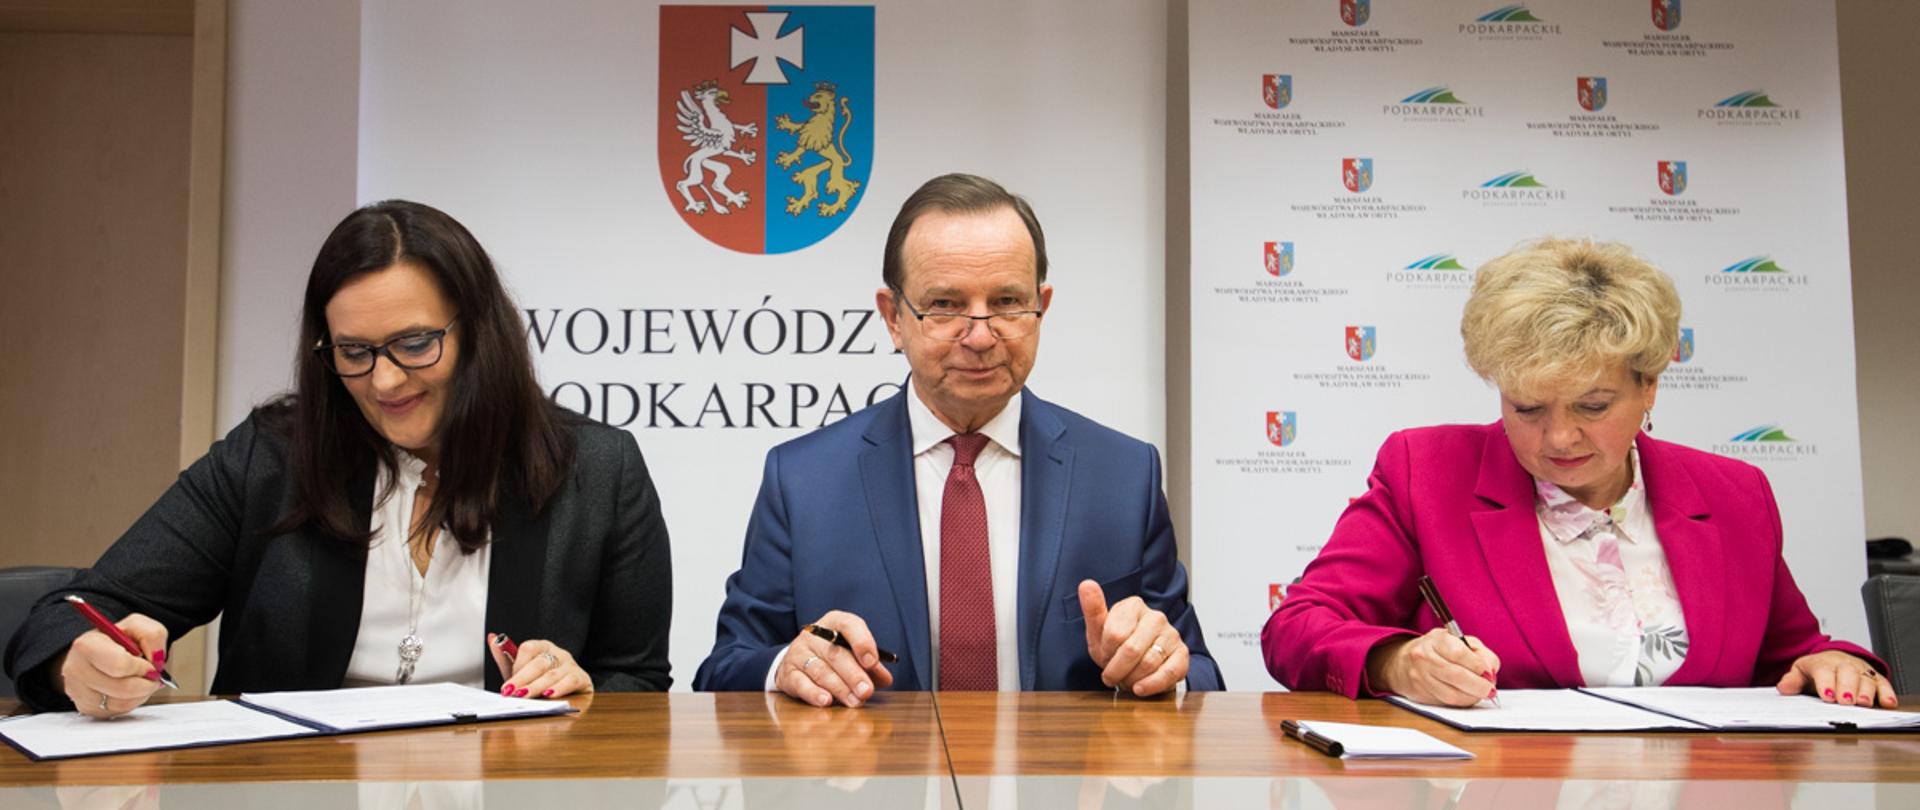 Na tle roll-upu województwa podkarpackiego przy stole siedzą od lewej: wiceminister Małgorzata Jarosińska-Jedynak, marszałek Władek Ortyl oraz wicemarszałek Ewa Draus